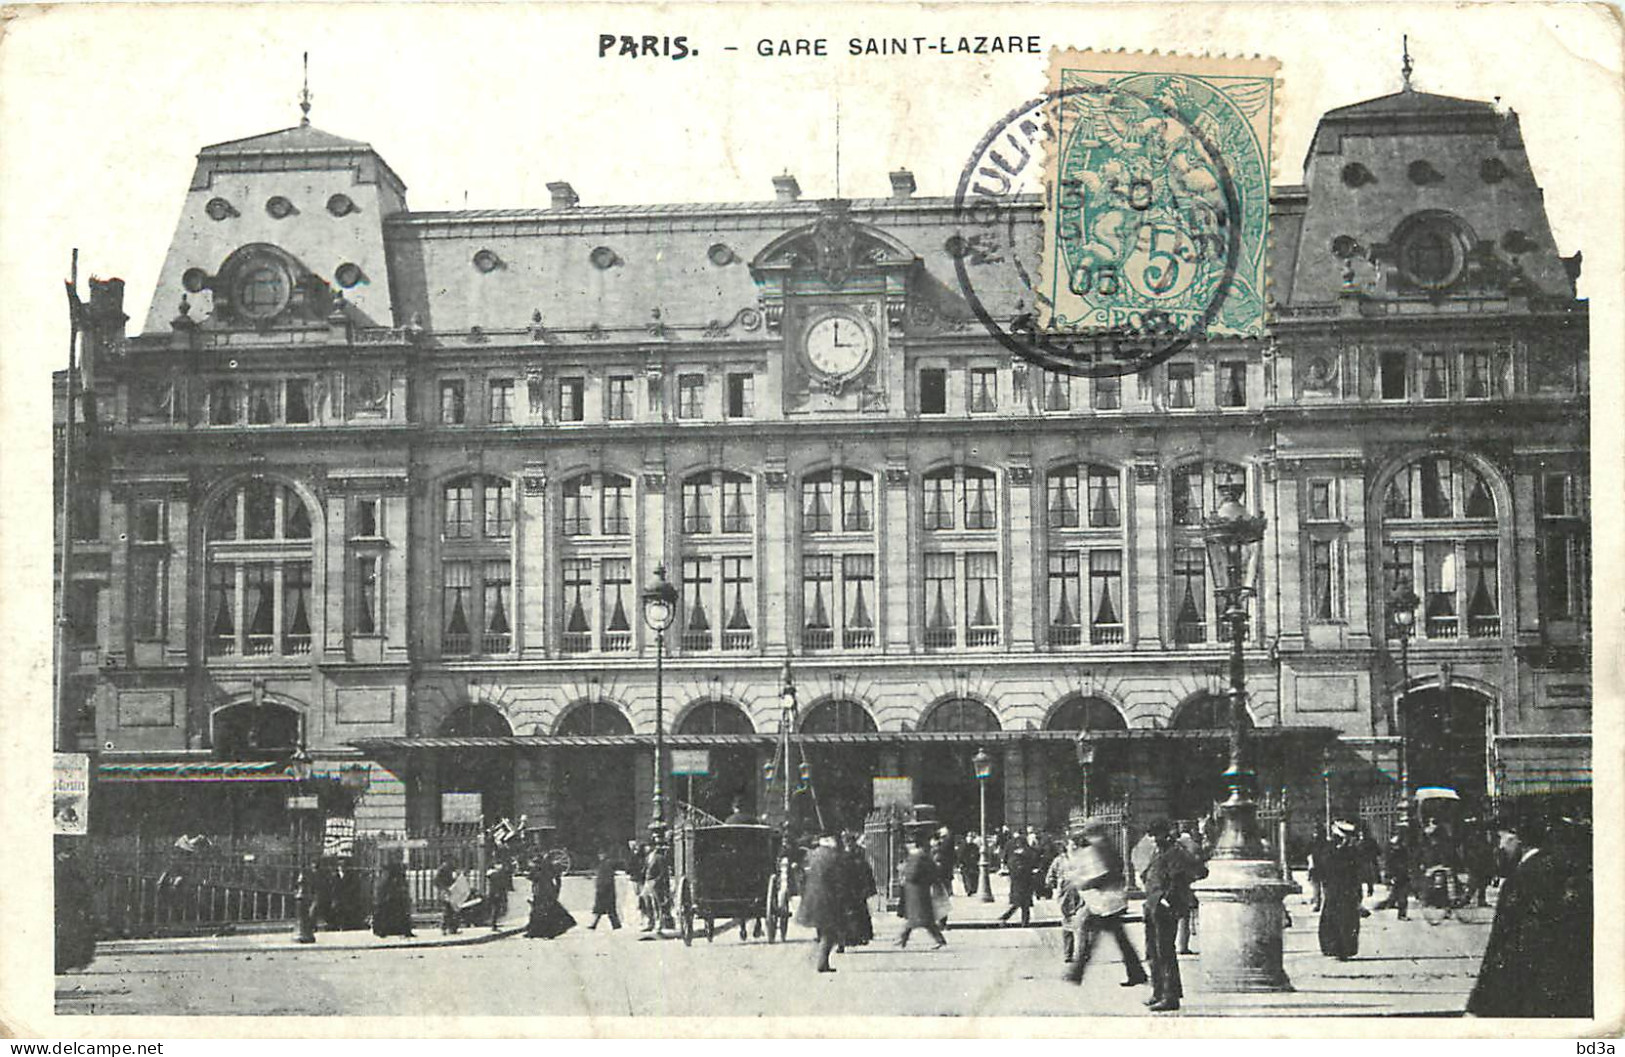  75   PARIS    GARE  SAINT LAZARE  - Pariser Métro, Bahnhöfe